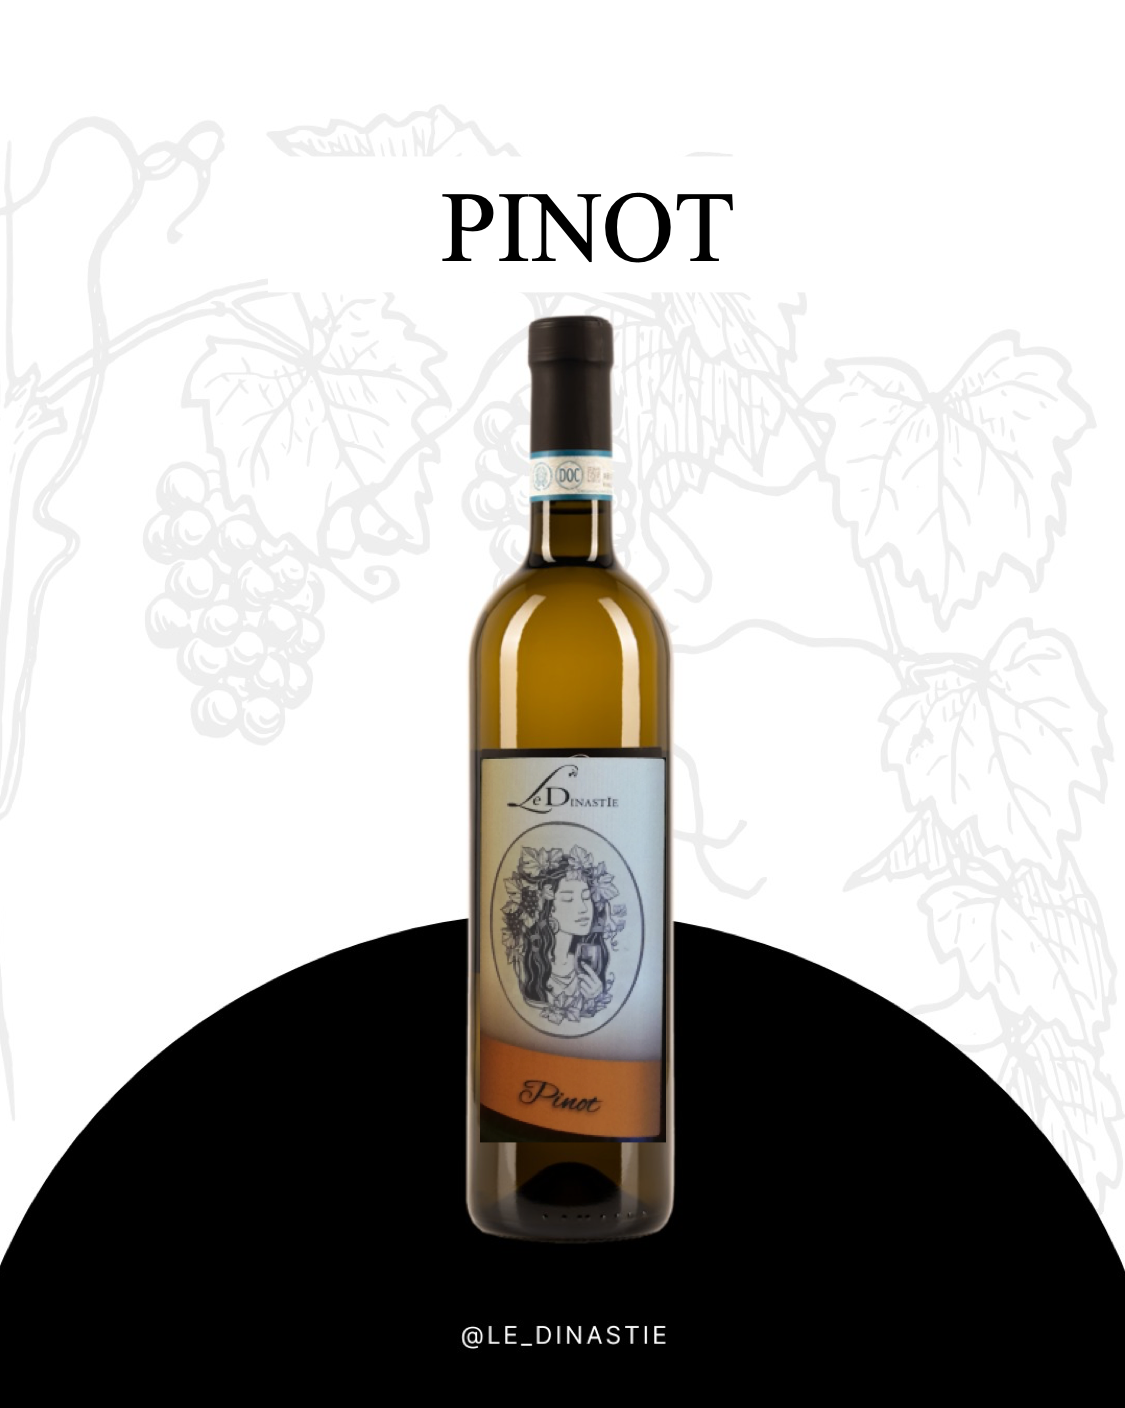 Pinot Nero vinificato in bianco IGP provincia di Pavia